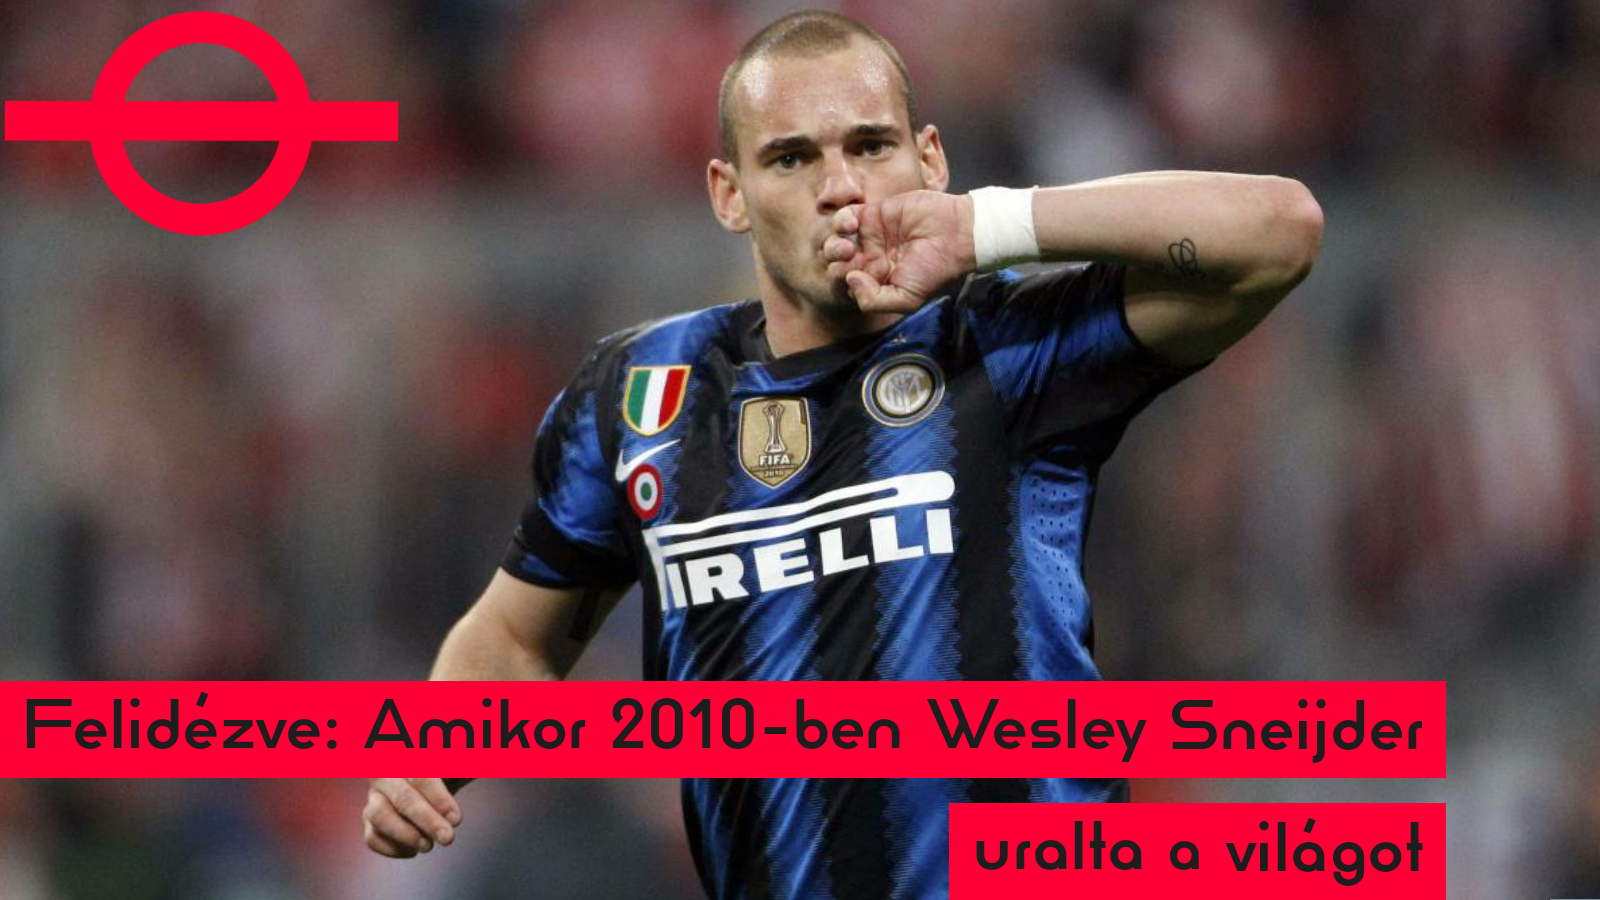  Felidézve: Amikor 2010-ben Wesley Sneijder uralta a világot